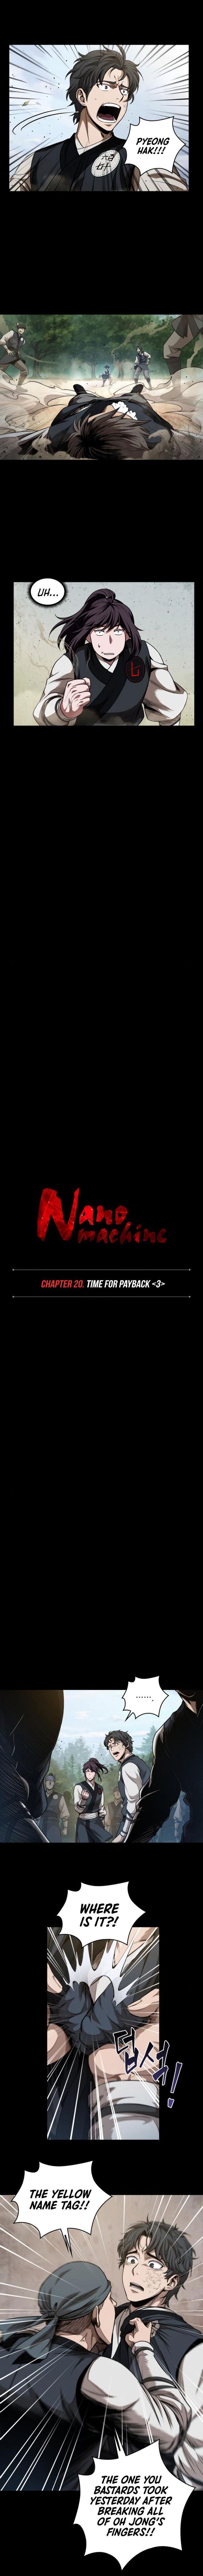 Nano Machine 53 2